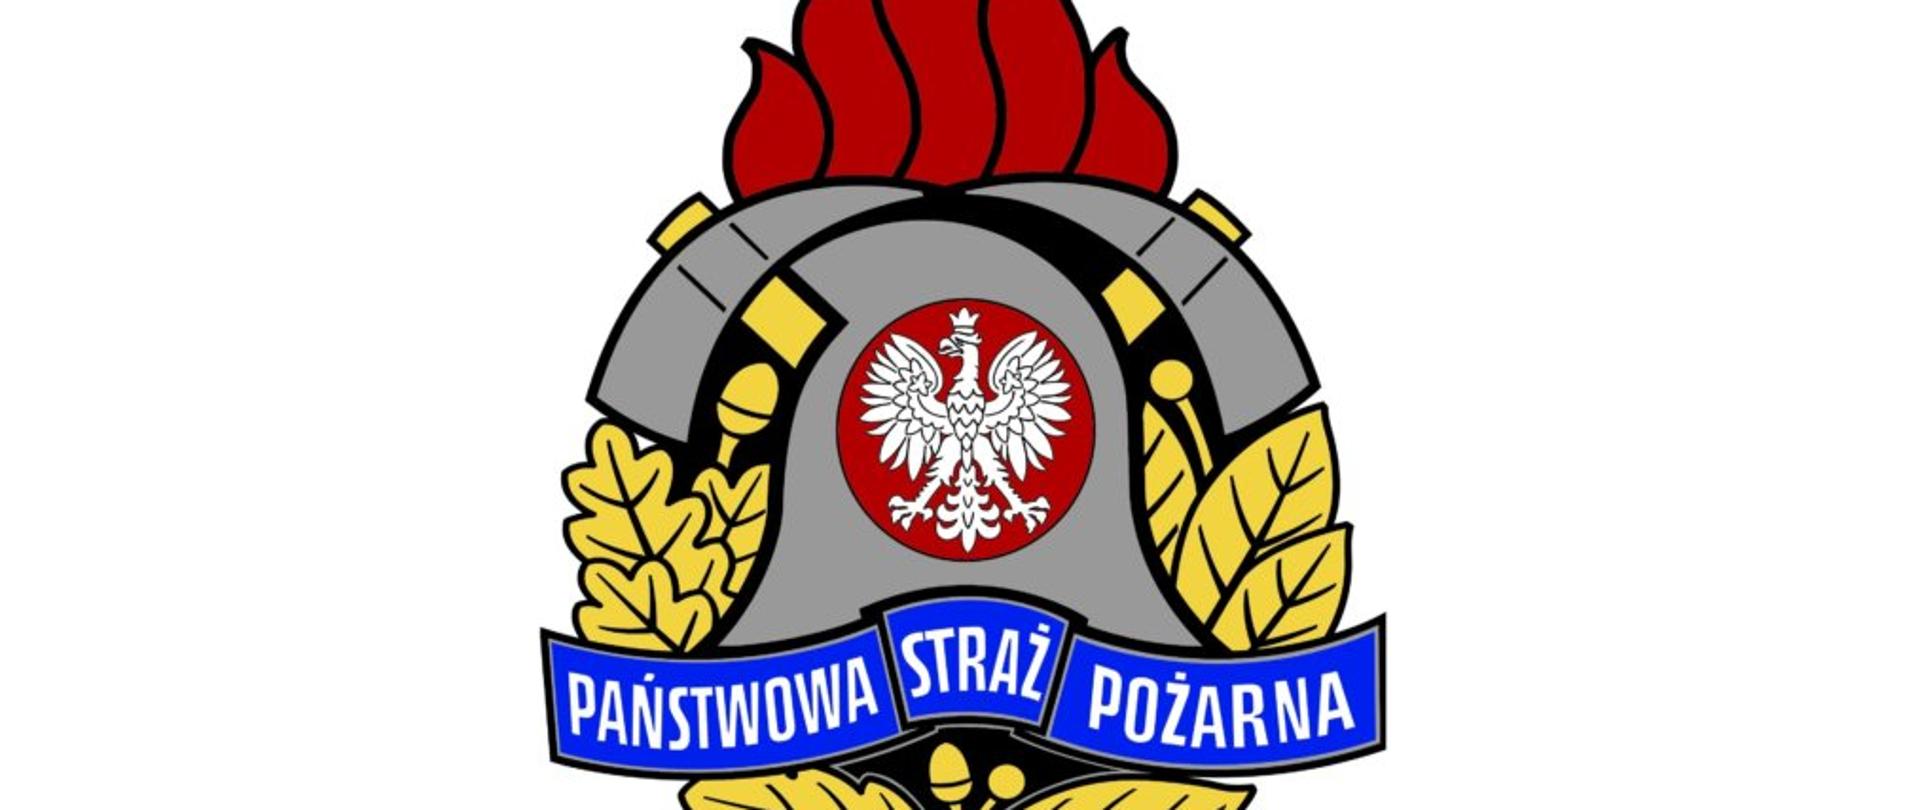 Obraz przedstawiający logo Państwowej Straży Pożarnej 